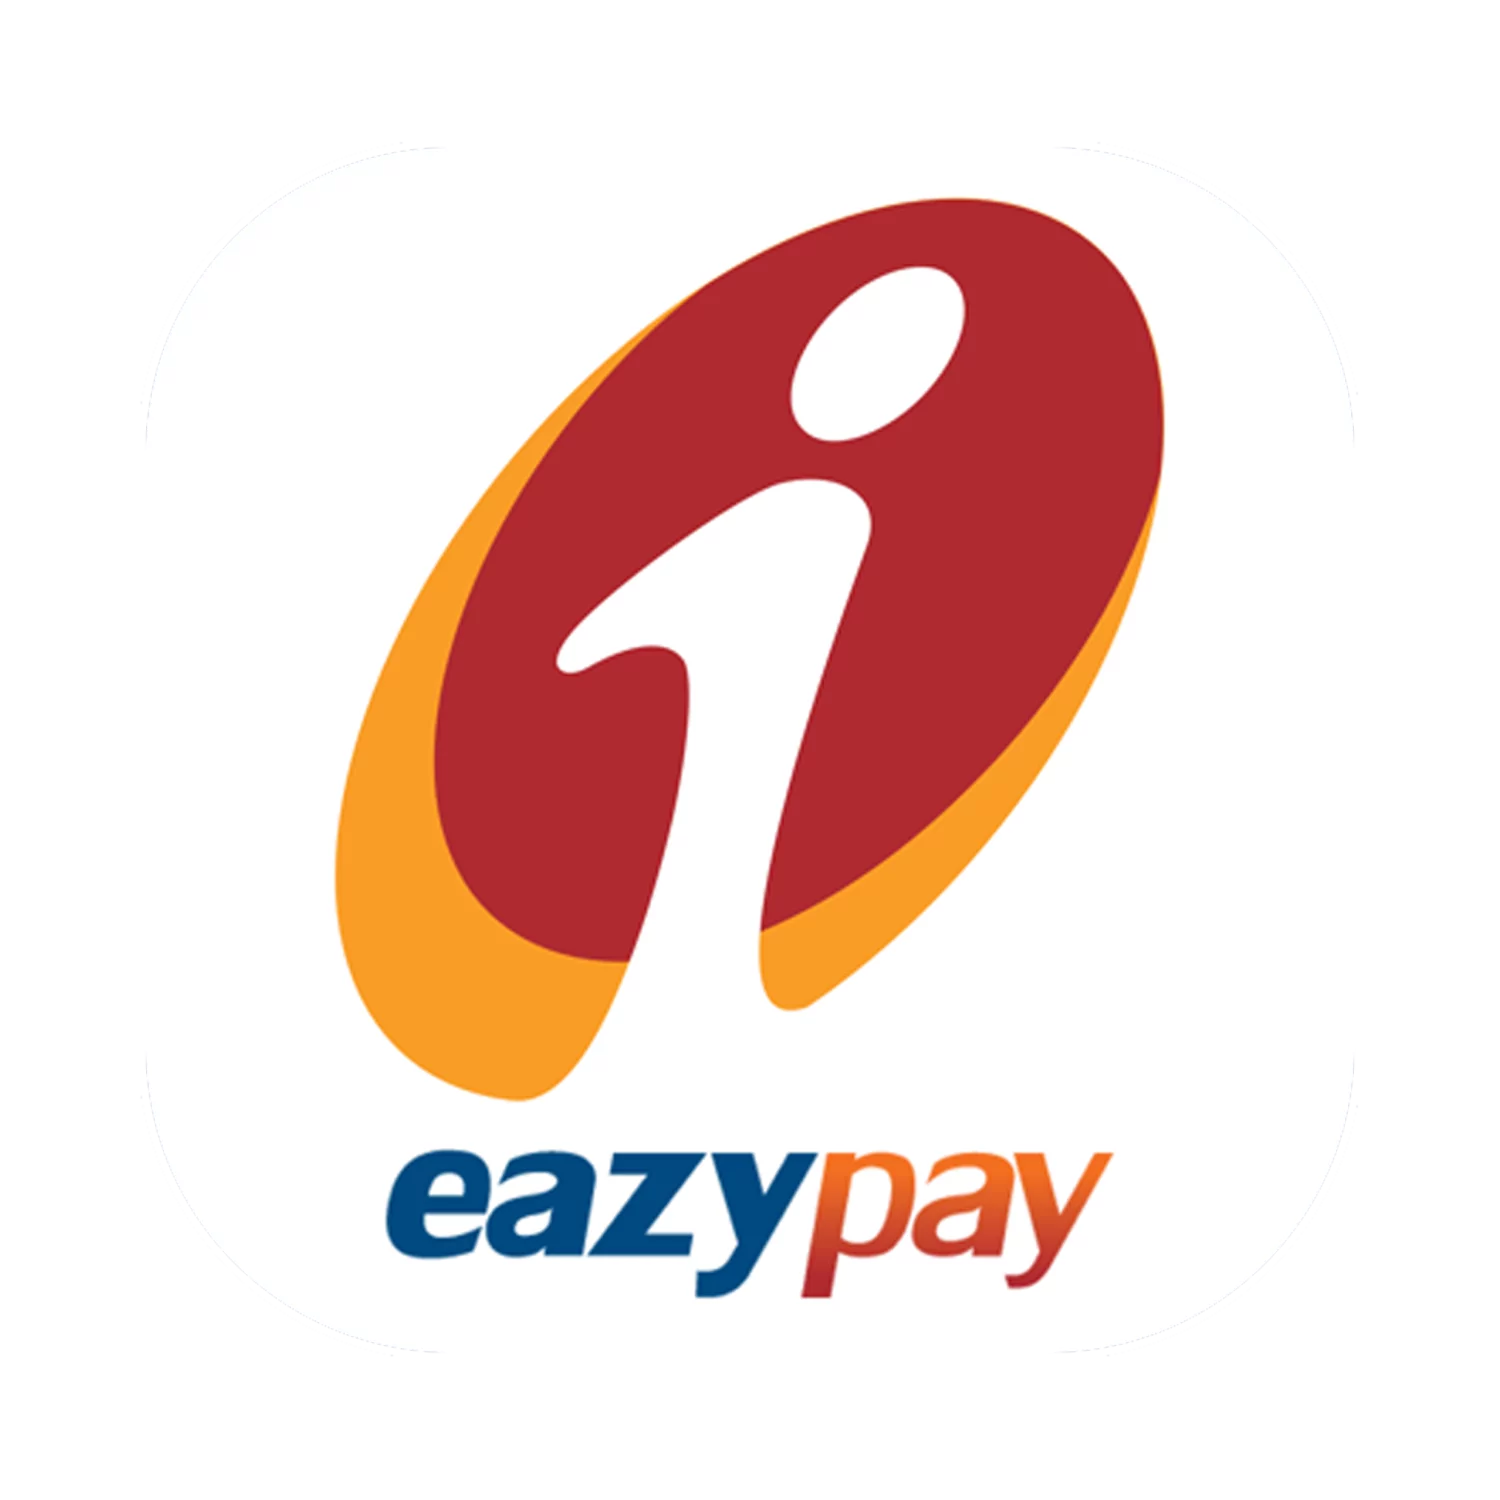 पैसे ट्रांसफर करने के लिए Eazypay सिस्टम का उपयोग करना सीखें।